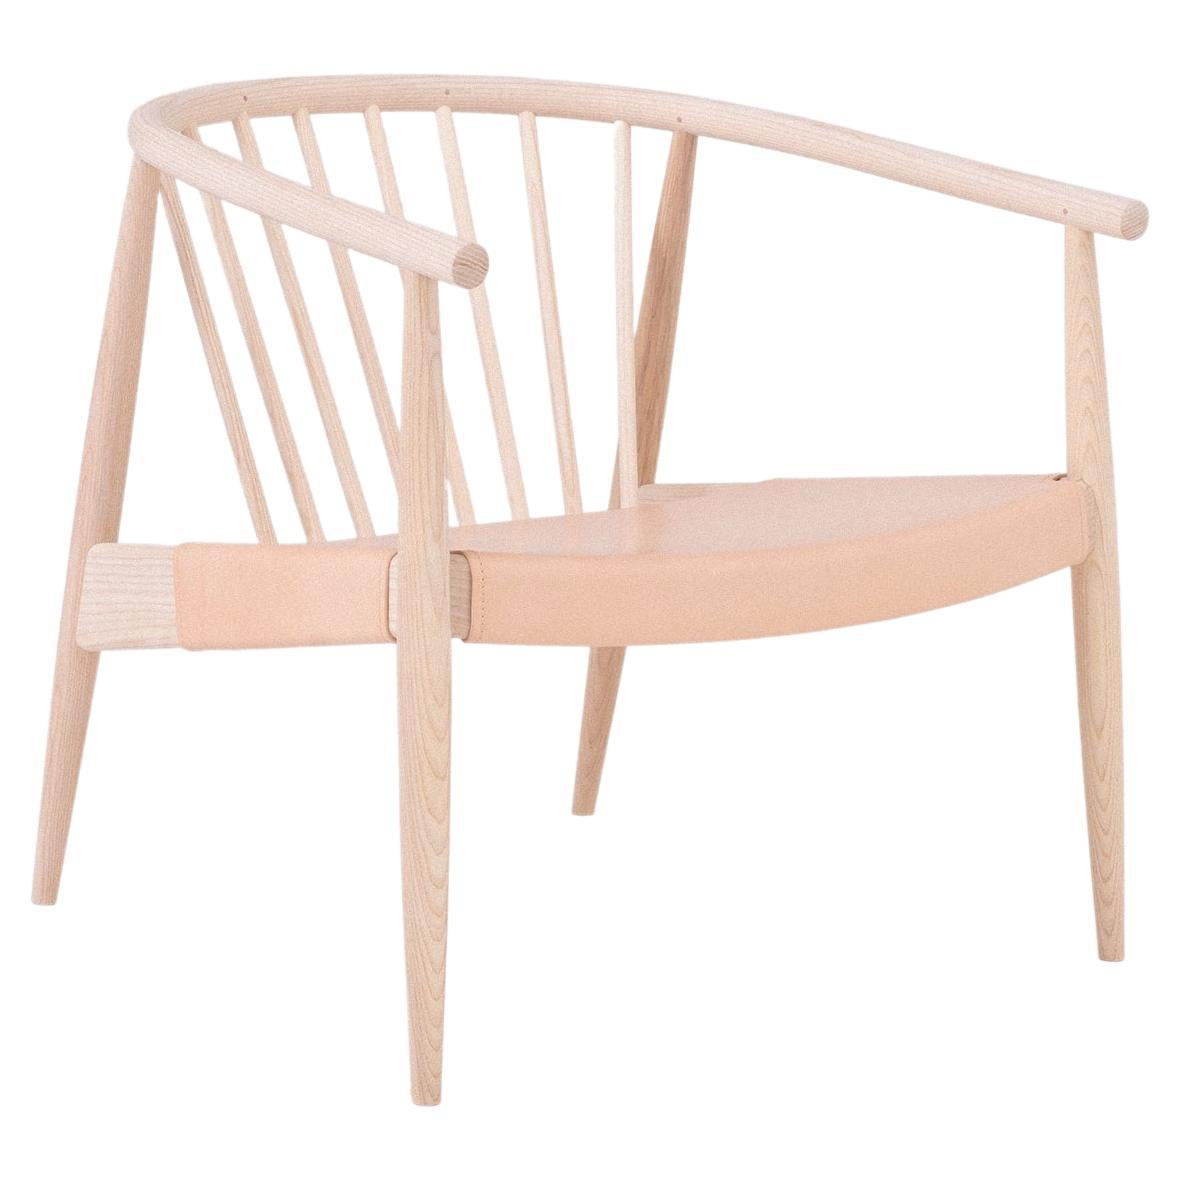 Der REPRISE CHAIR WITH HIDE SEAT ist eine mühelose, elegante Sitzlösung mit raffinierter, subtiler Präsenz, die mit architektonischen Referenzen aufwartet. Der 2020 eingeführte Stuhl ist eine Collaboration zwischen L.Ercolani und Norm